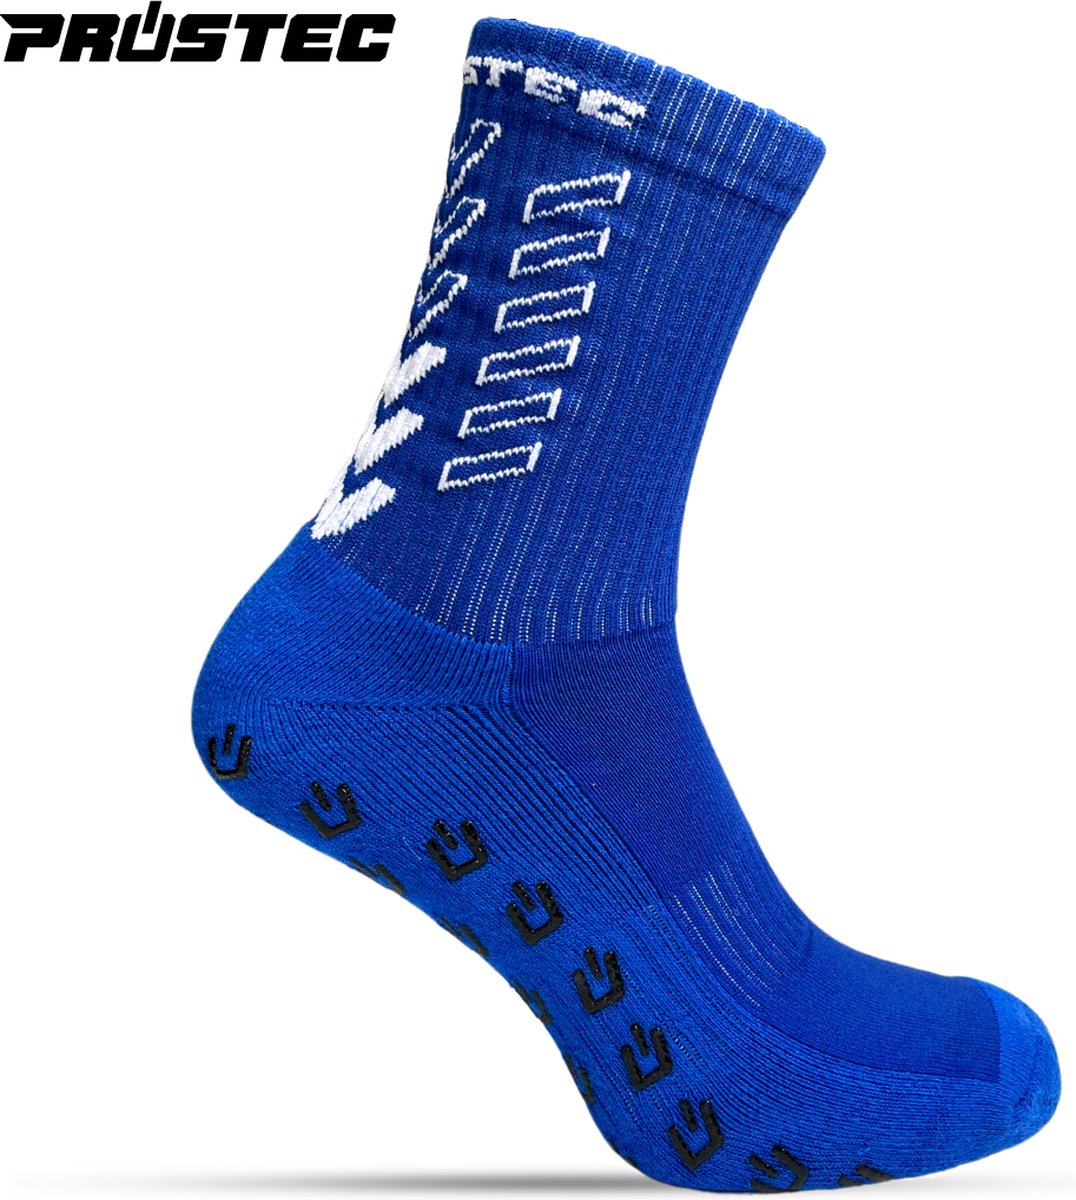 Prostec® Gripsokken - Gripsokken Voetbal - Grip Socks - One Size - Anti Slip - Gripsokken Blauw